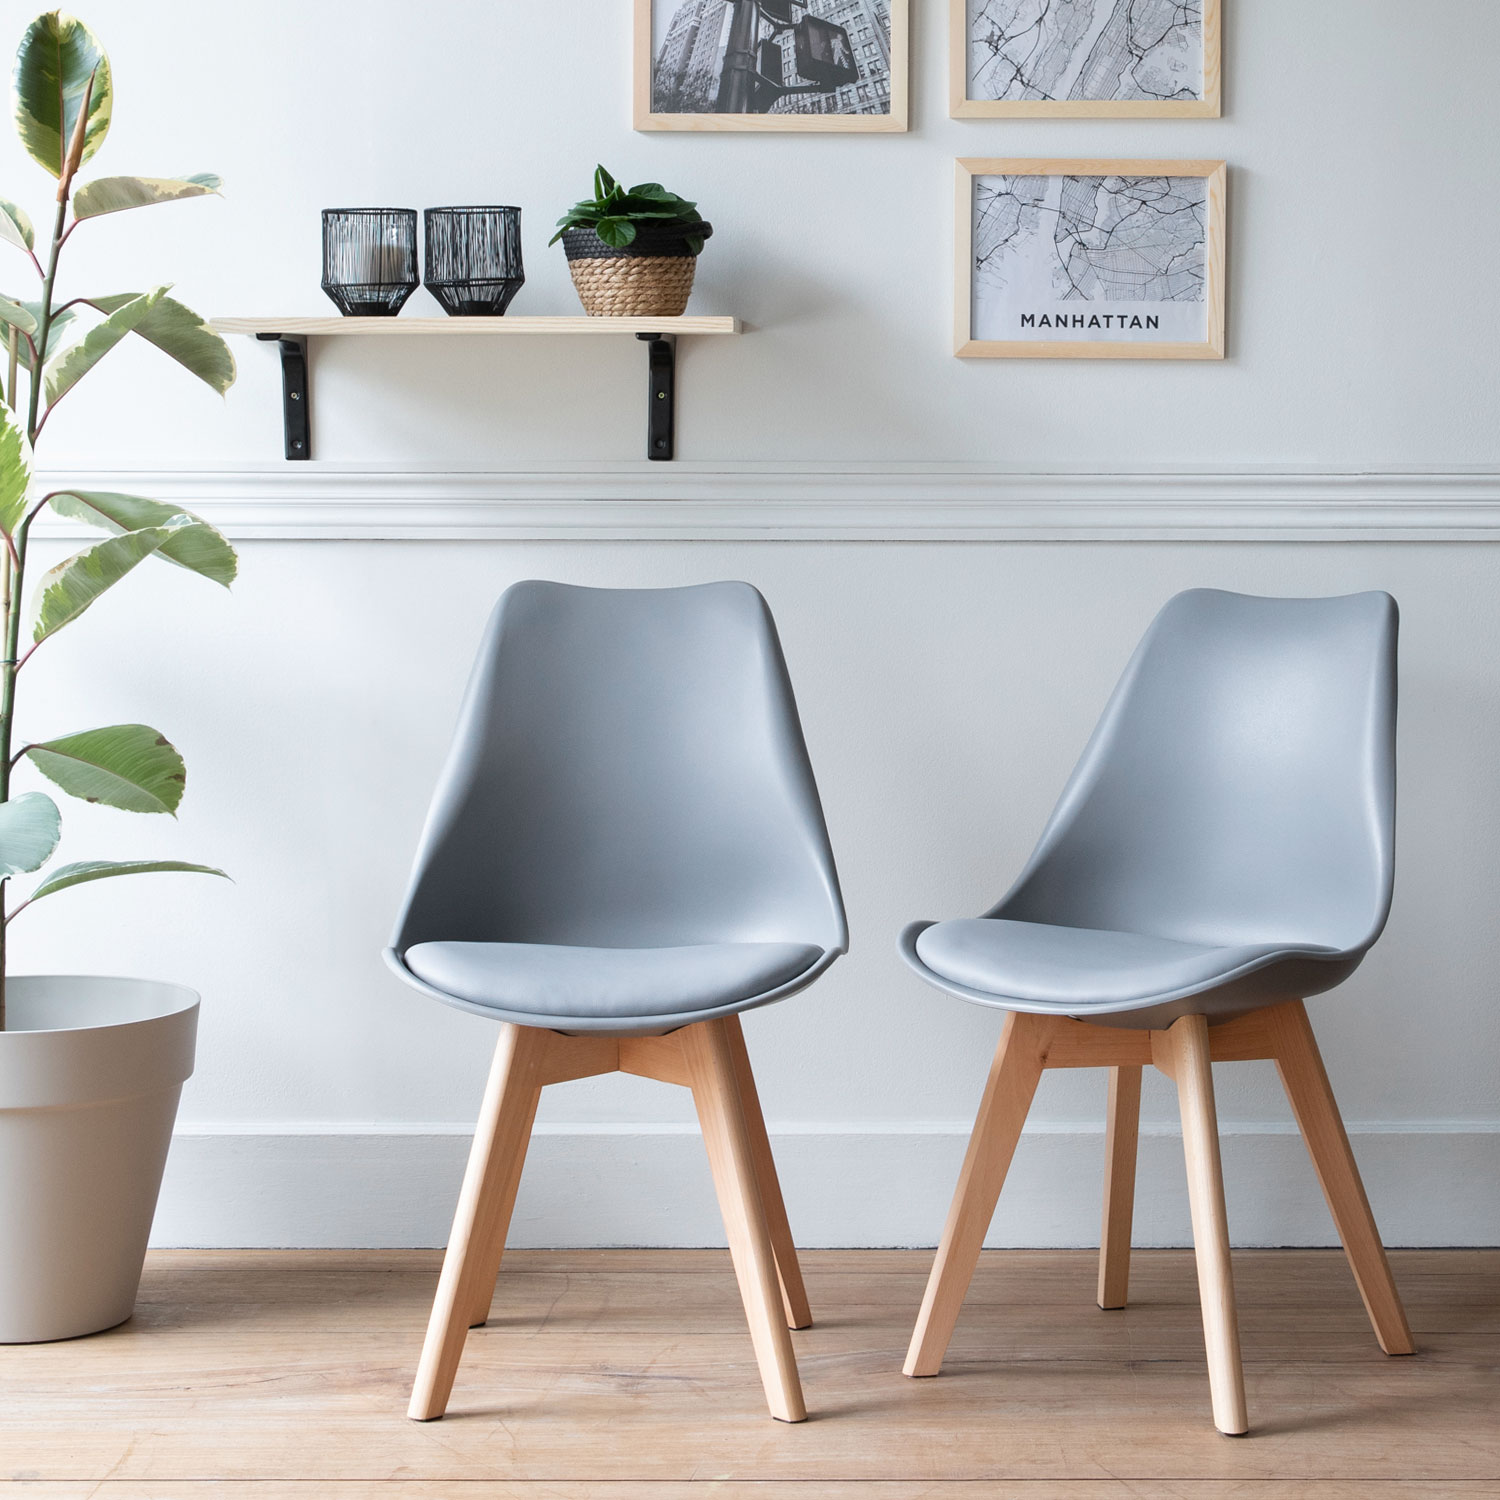 Lote de 2 sillas escandinavas NORA color gris con cojín